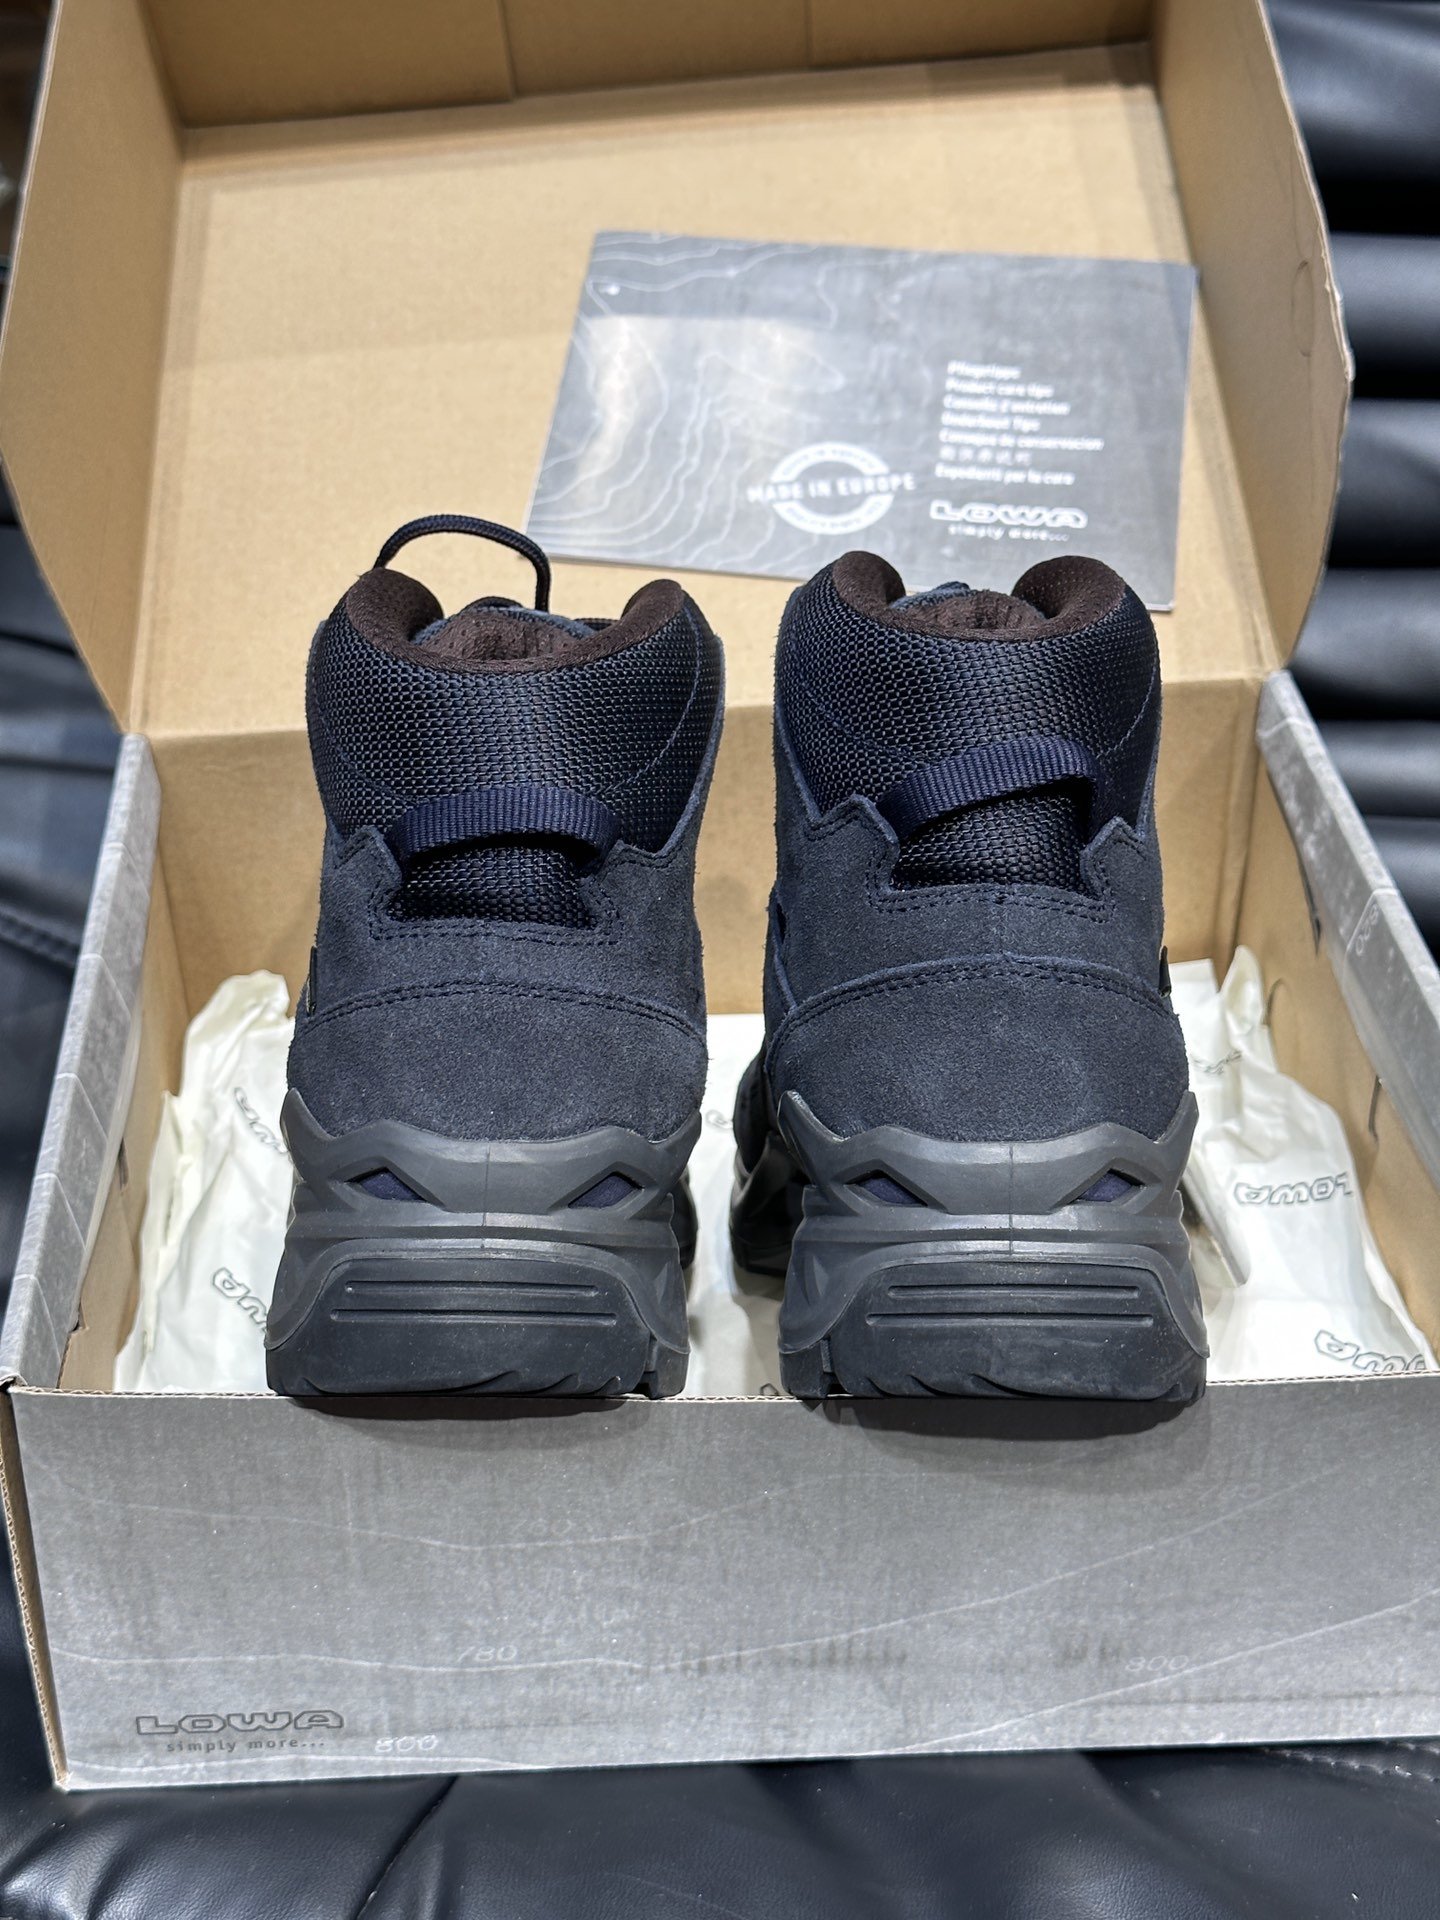 LOWASIRKOSEVOGTX高帮户外徒步防水鞋鞋子表面是聚酯网/热塑性聚氨酯衬里是防水透气膜接缝密封